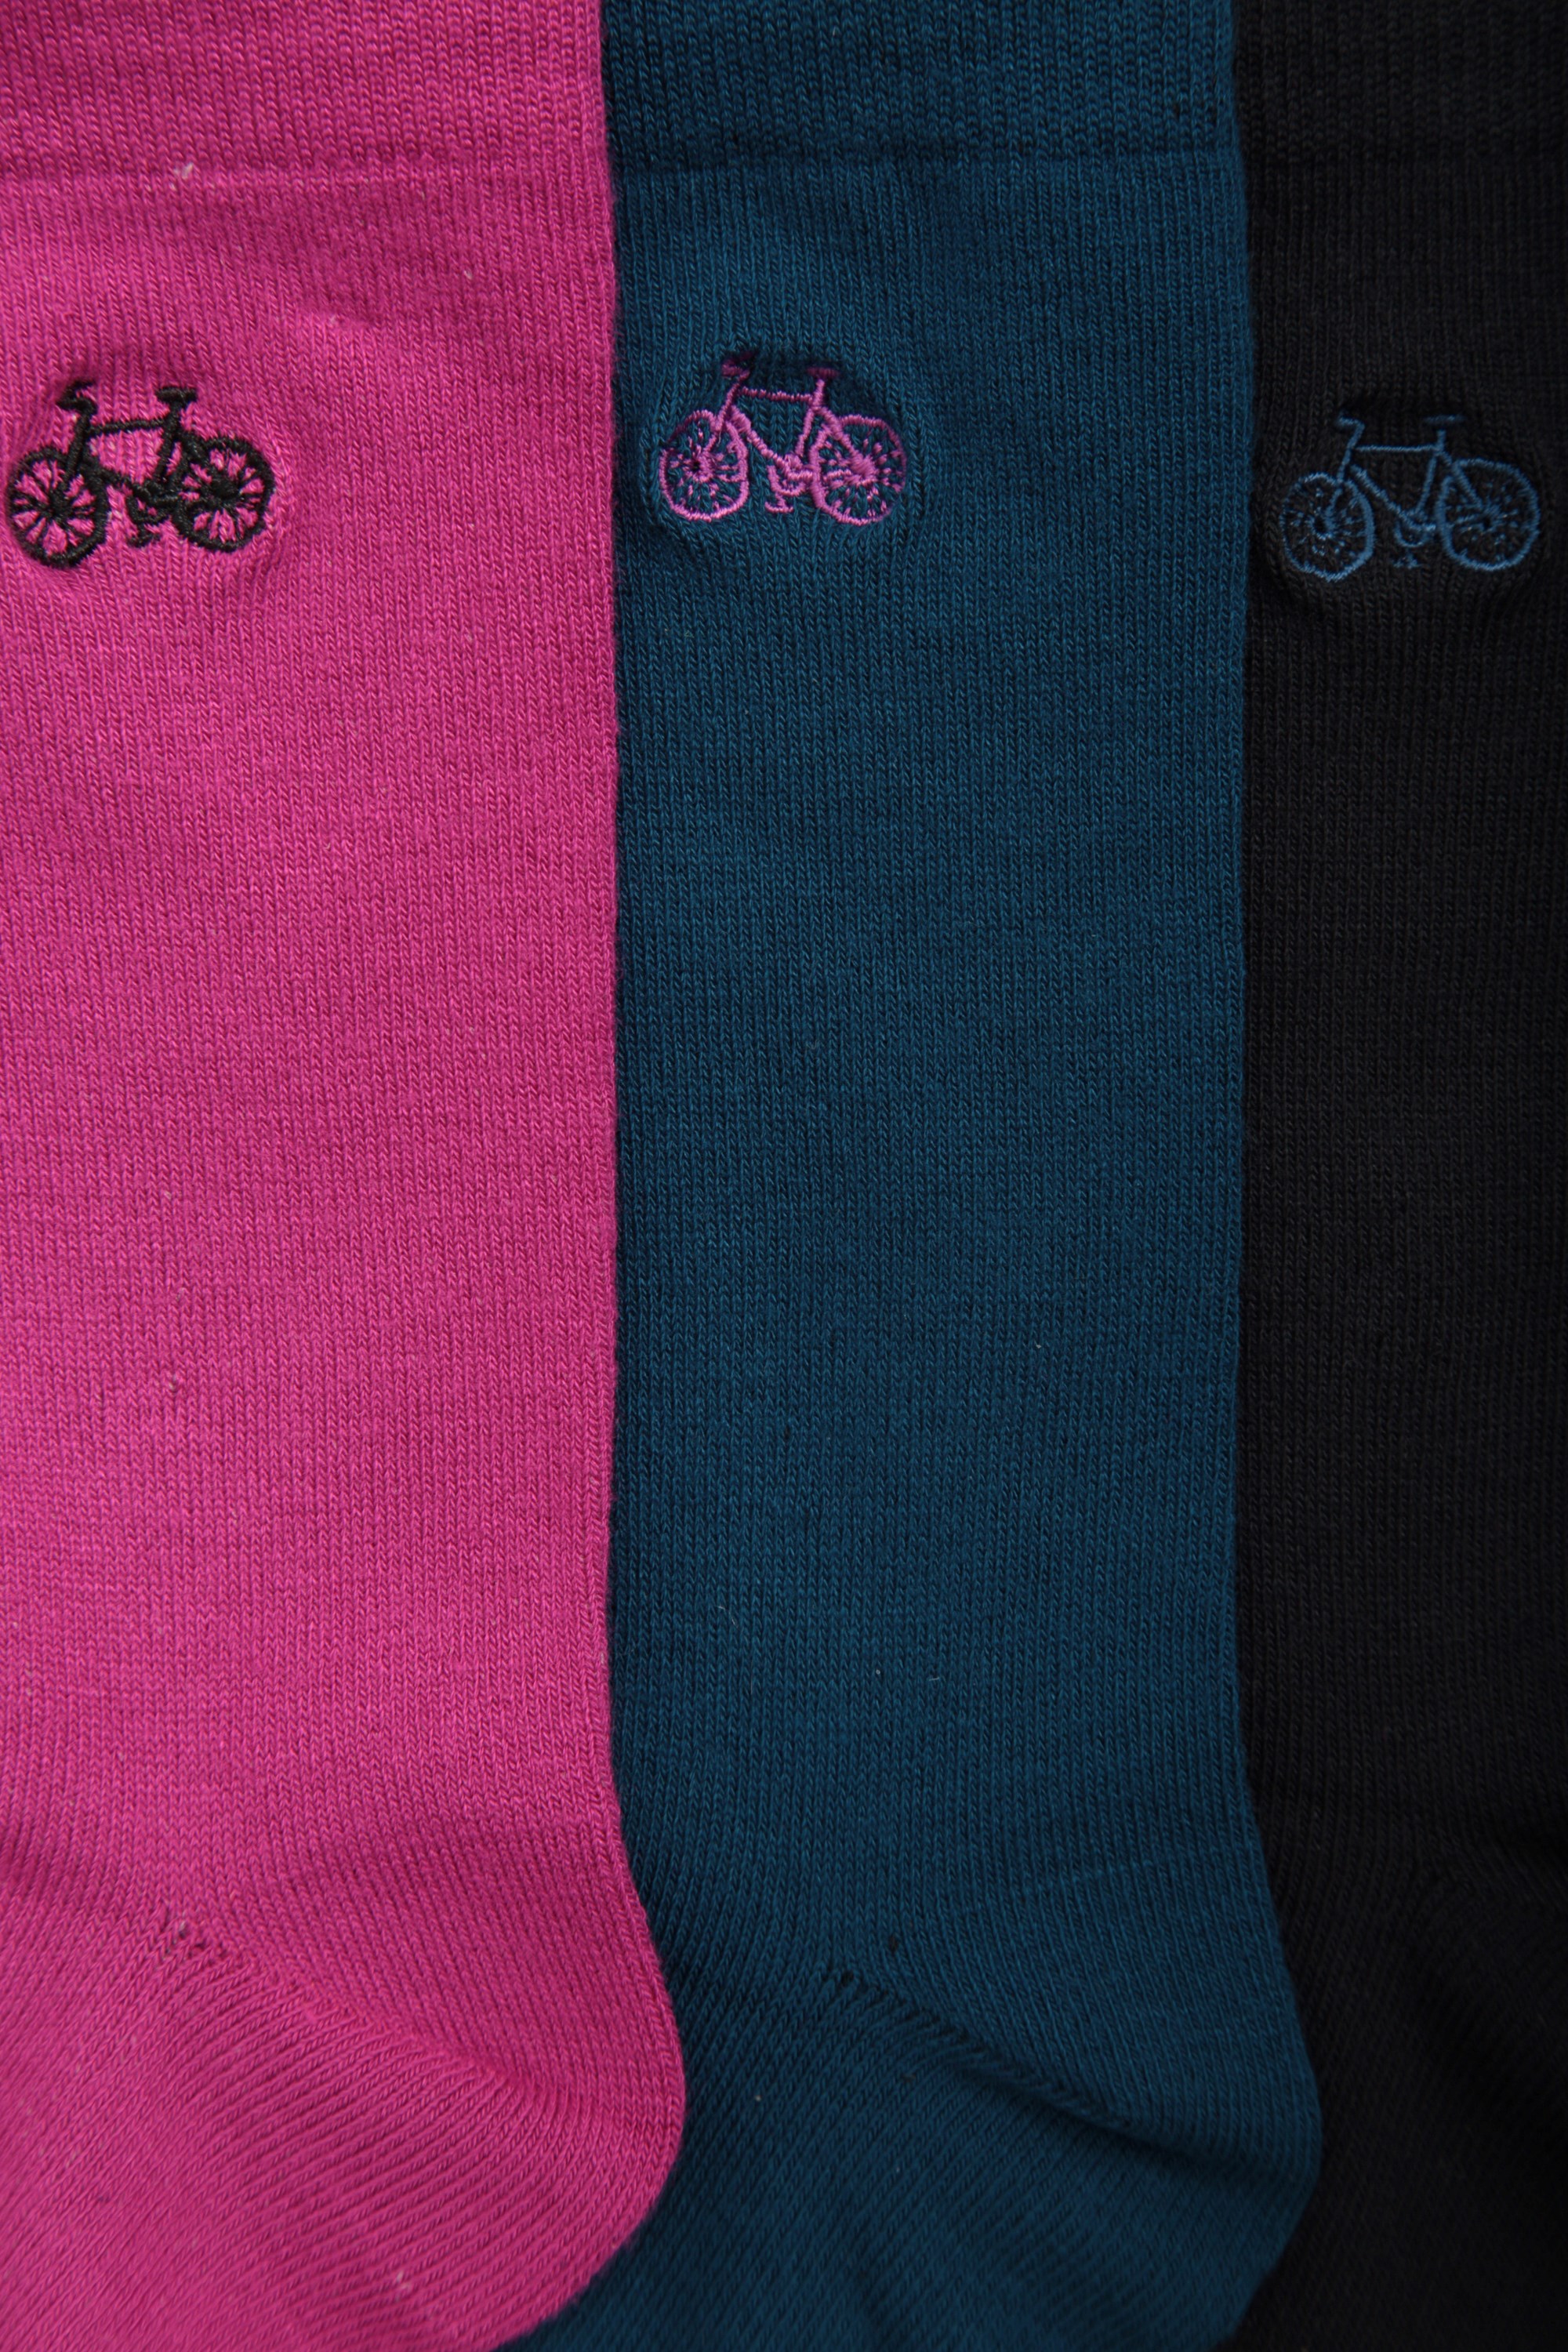 Bike Womens Bamboo Socks Multipack